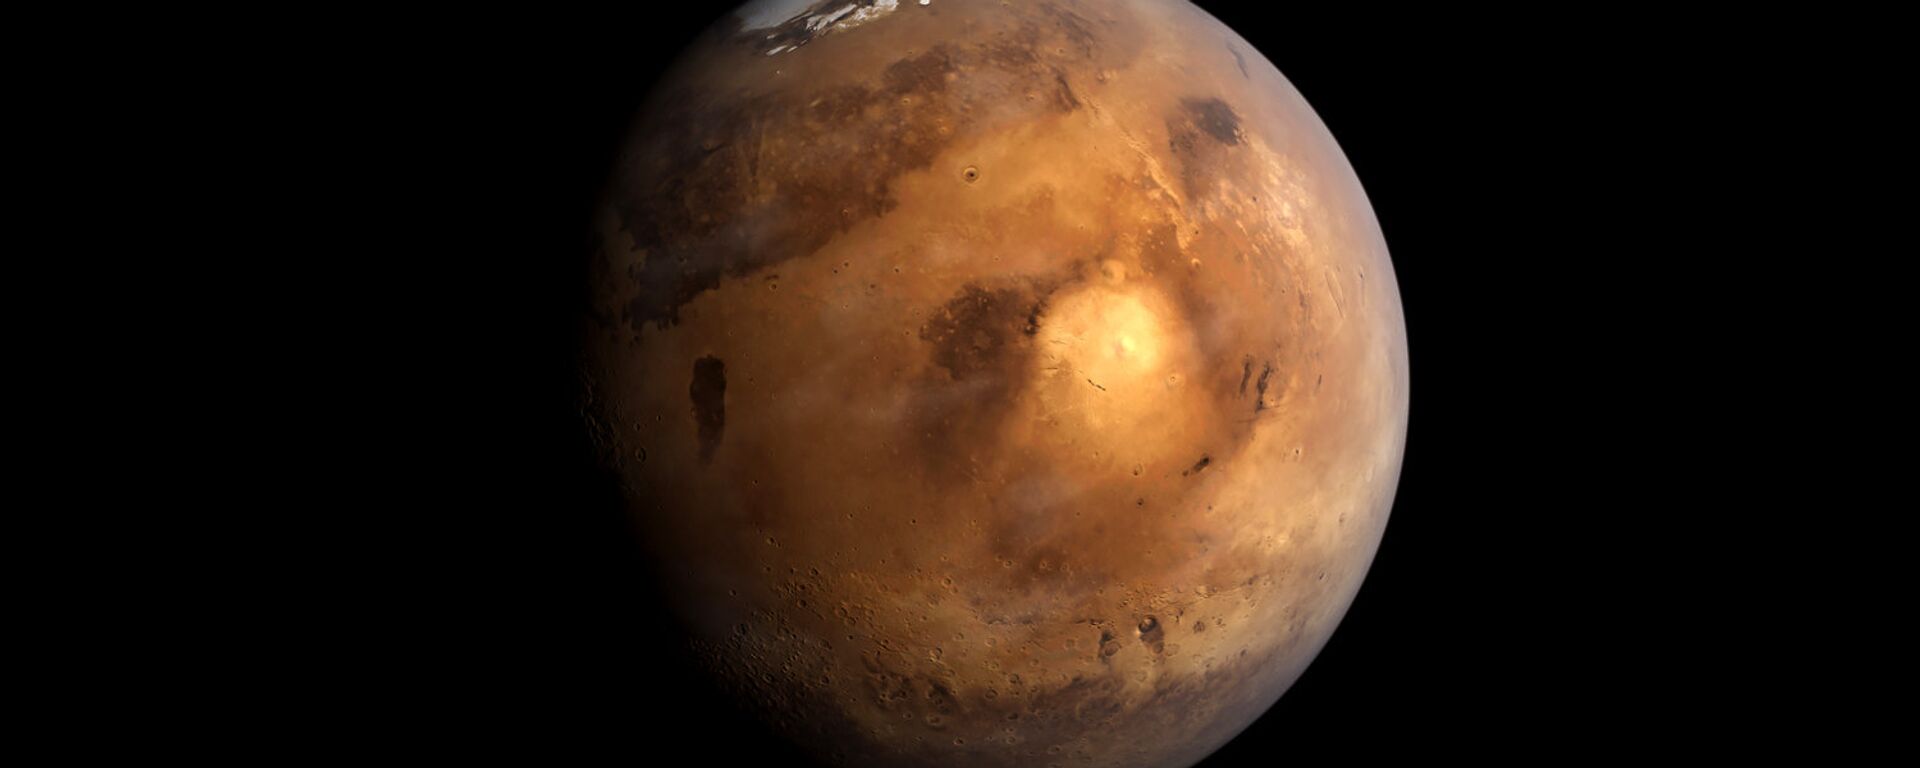 Планета Марс - Sputnik Ўзбекистон, 1920, 23.12.2020